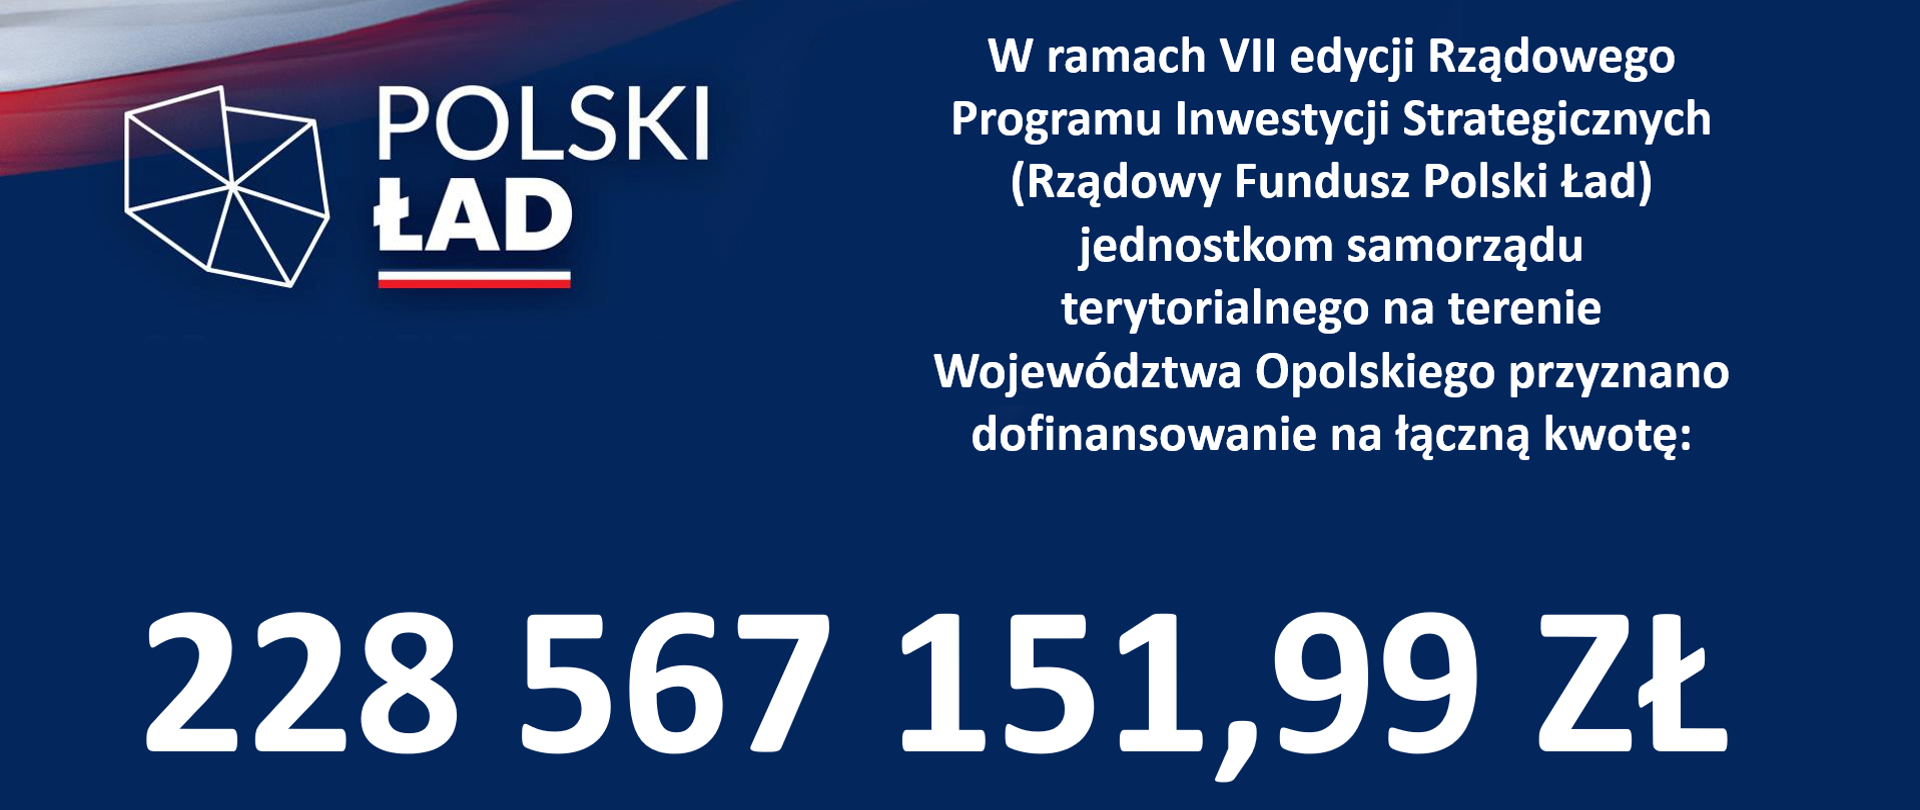 W ramach VII edycji Rządowego Programu Inwestycji Strategicznych (Rządowy Fundusz Polski Ład) jednostkom samorządu terytorialnego na terenie Województwa Opolskiego przyznano dofinansowanie na łączną kwotę 228567151 złotych i 99 groszy.